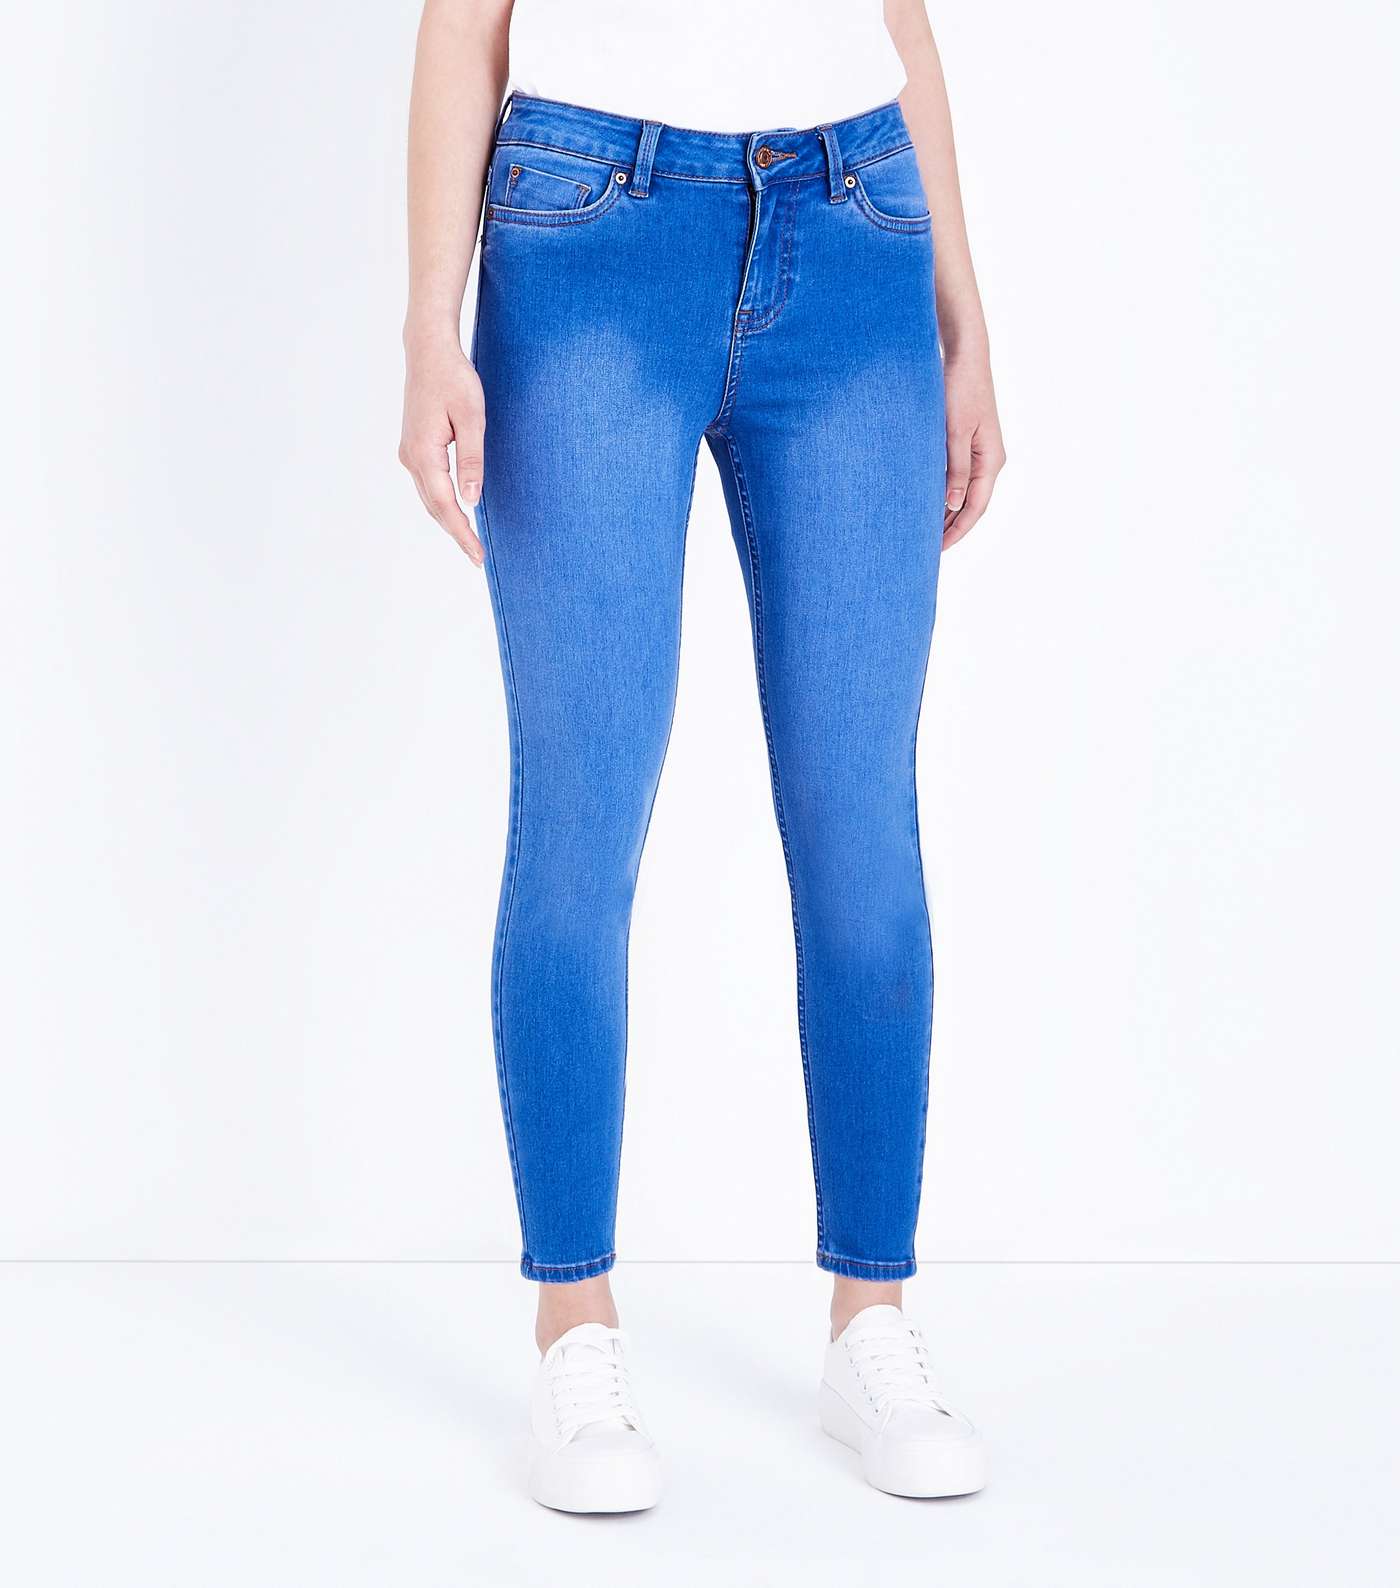 Petite Bright Blue 26in Super Soft Super Skinny Jeans Image 2